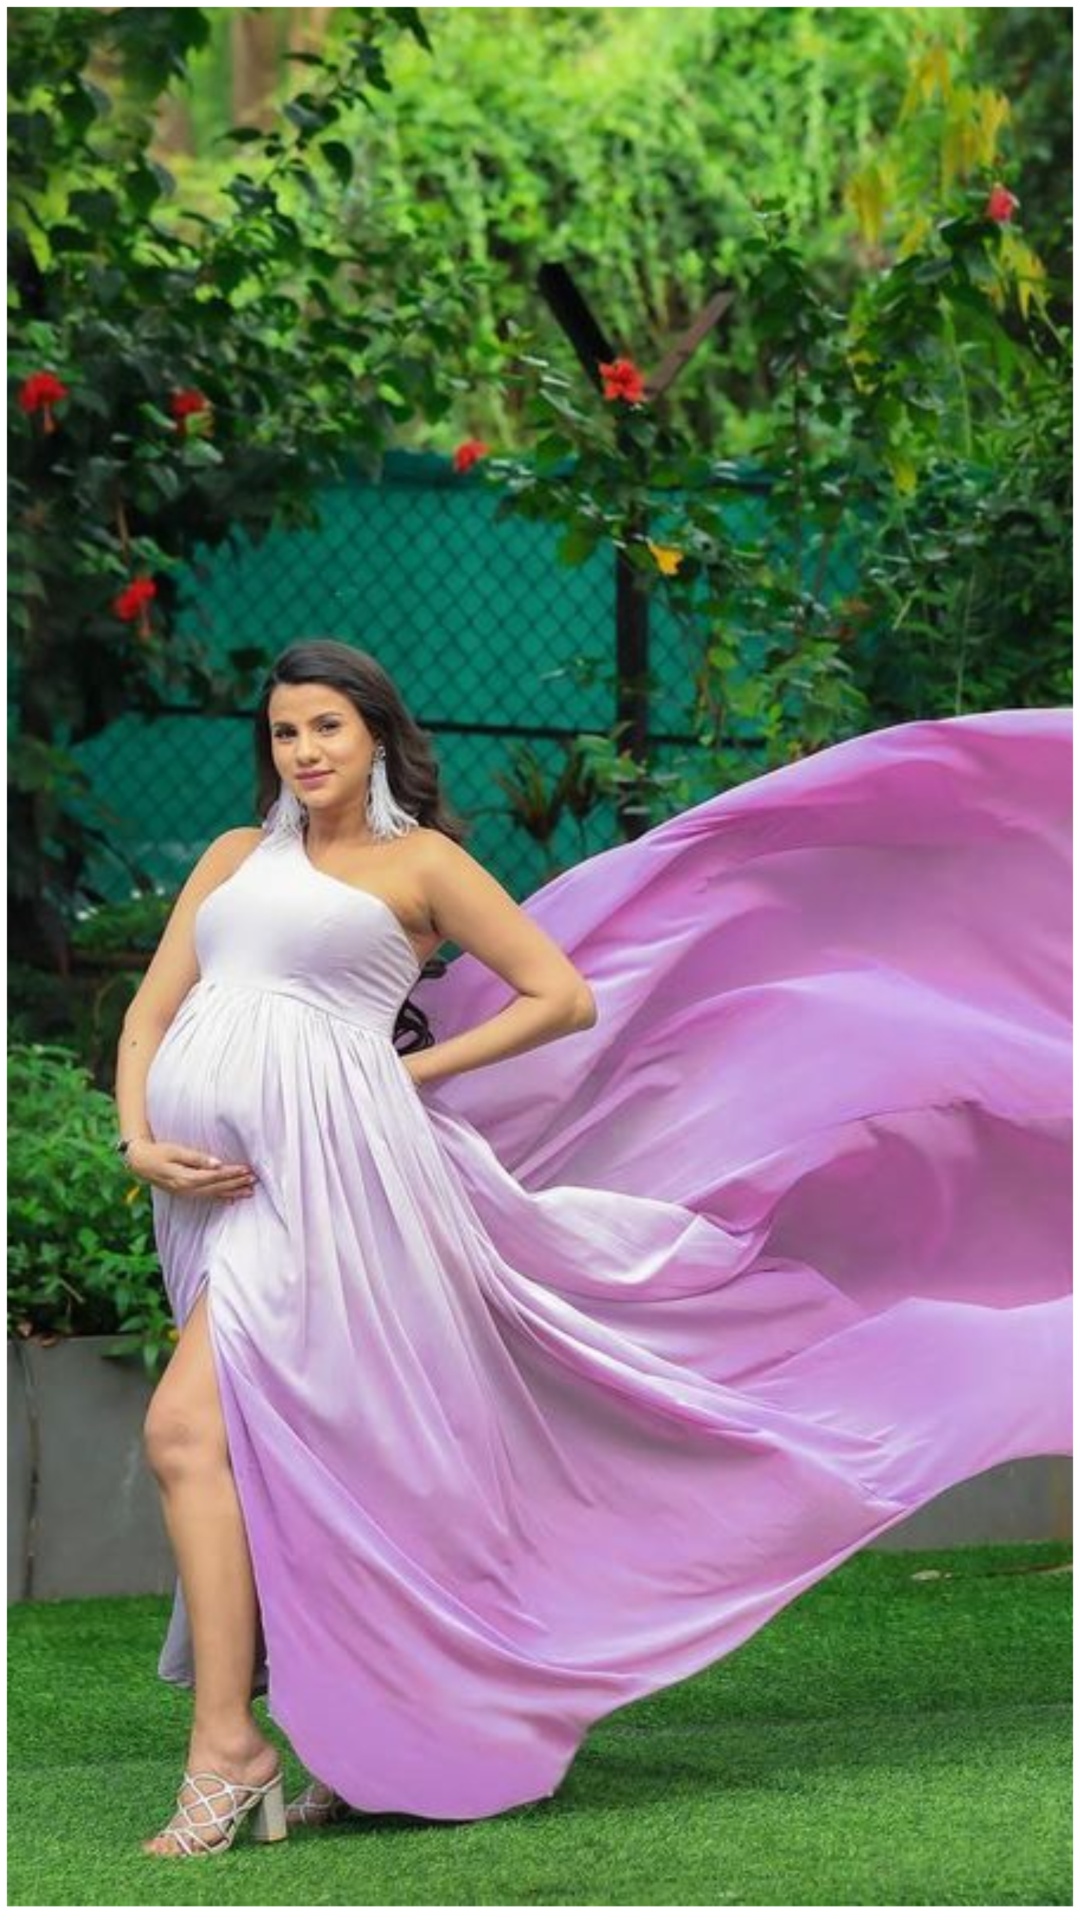 इस मशहूर एक्ट्रेस ने बेबी बंप के साथ तस्वीर शेयर कर कंफर्म की अपनी प्रेग्नेंसी 